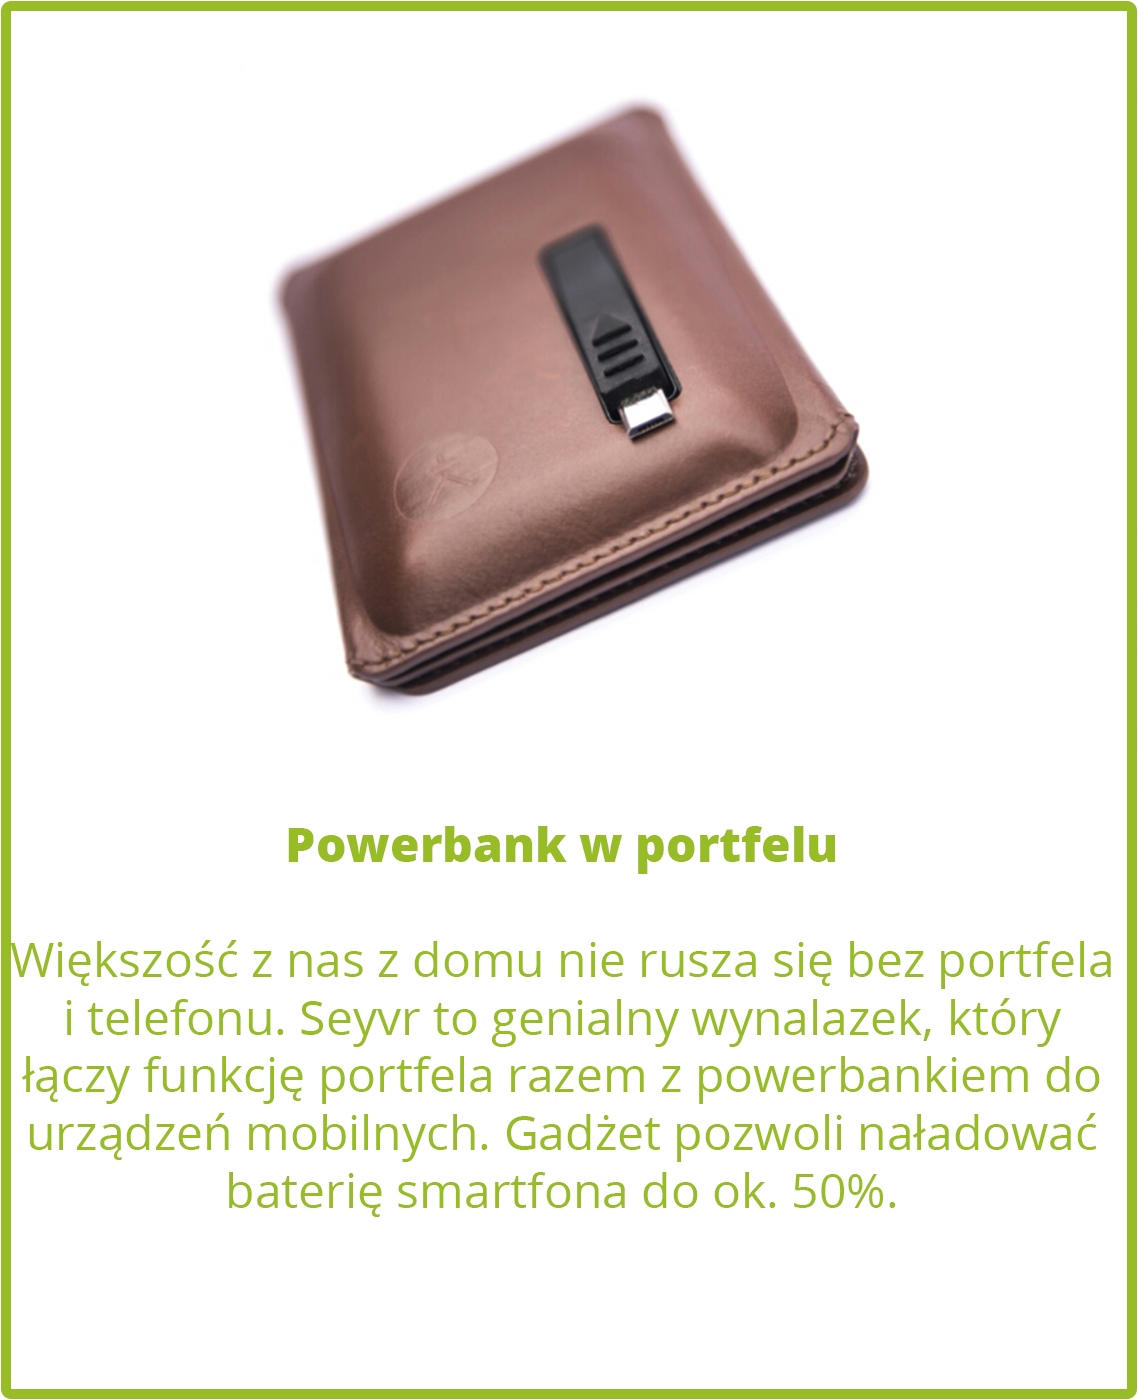 Powerbank w portfelu